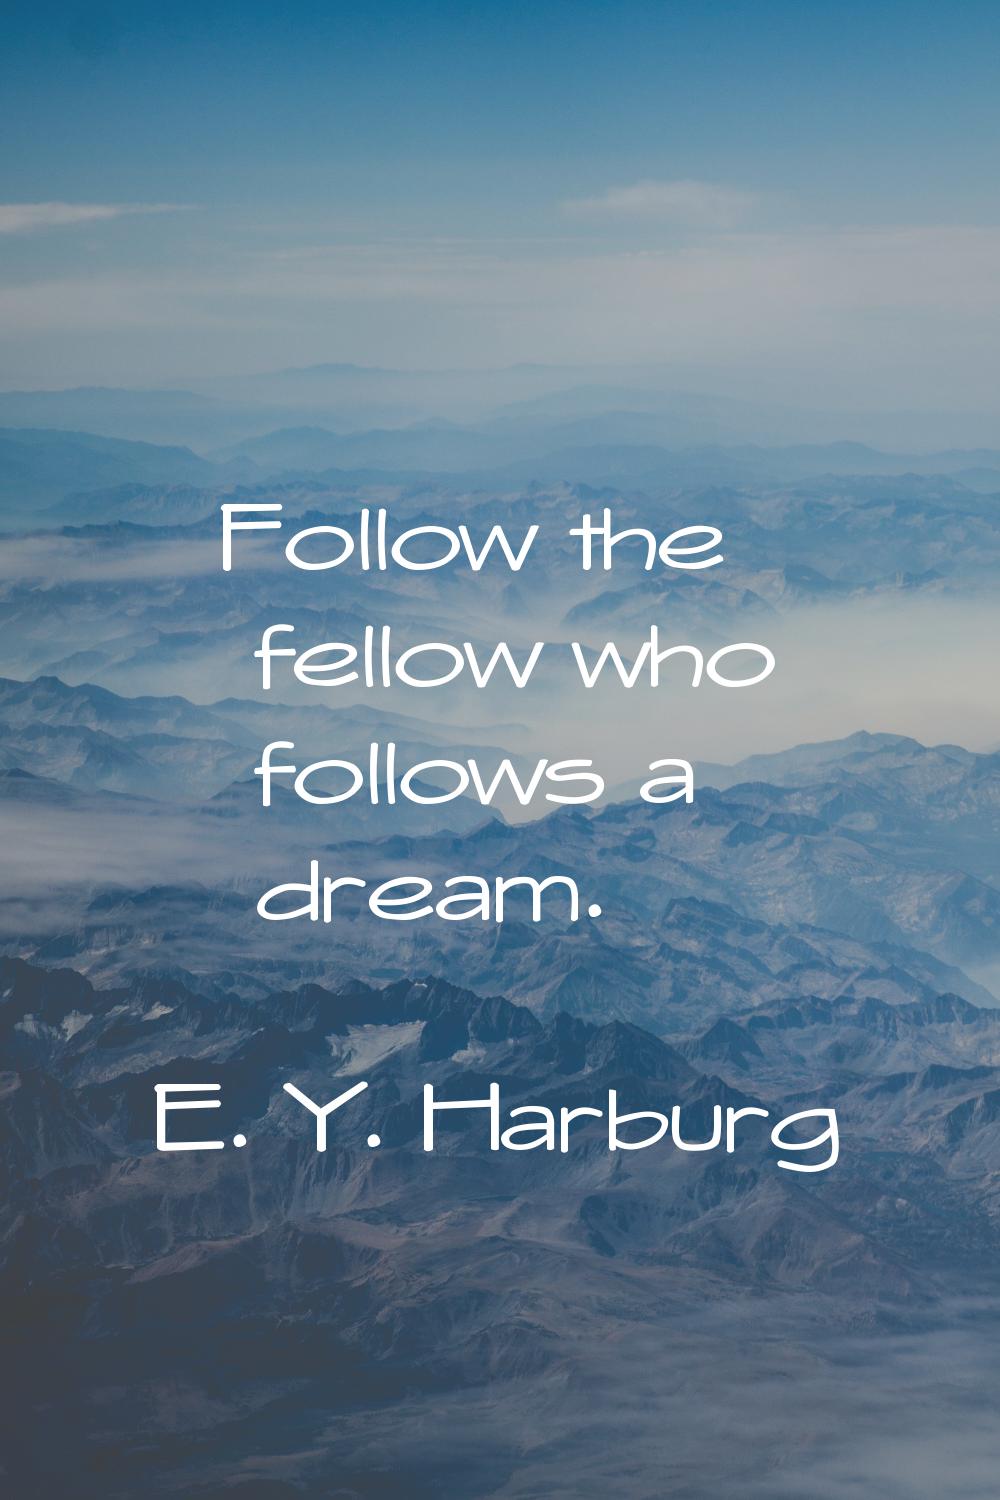 Follow the fellow who follows a dream.